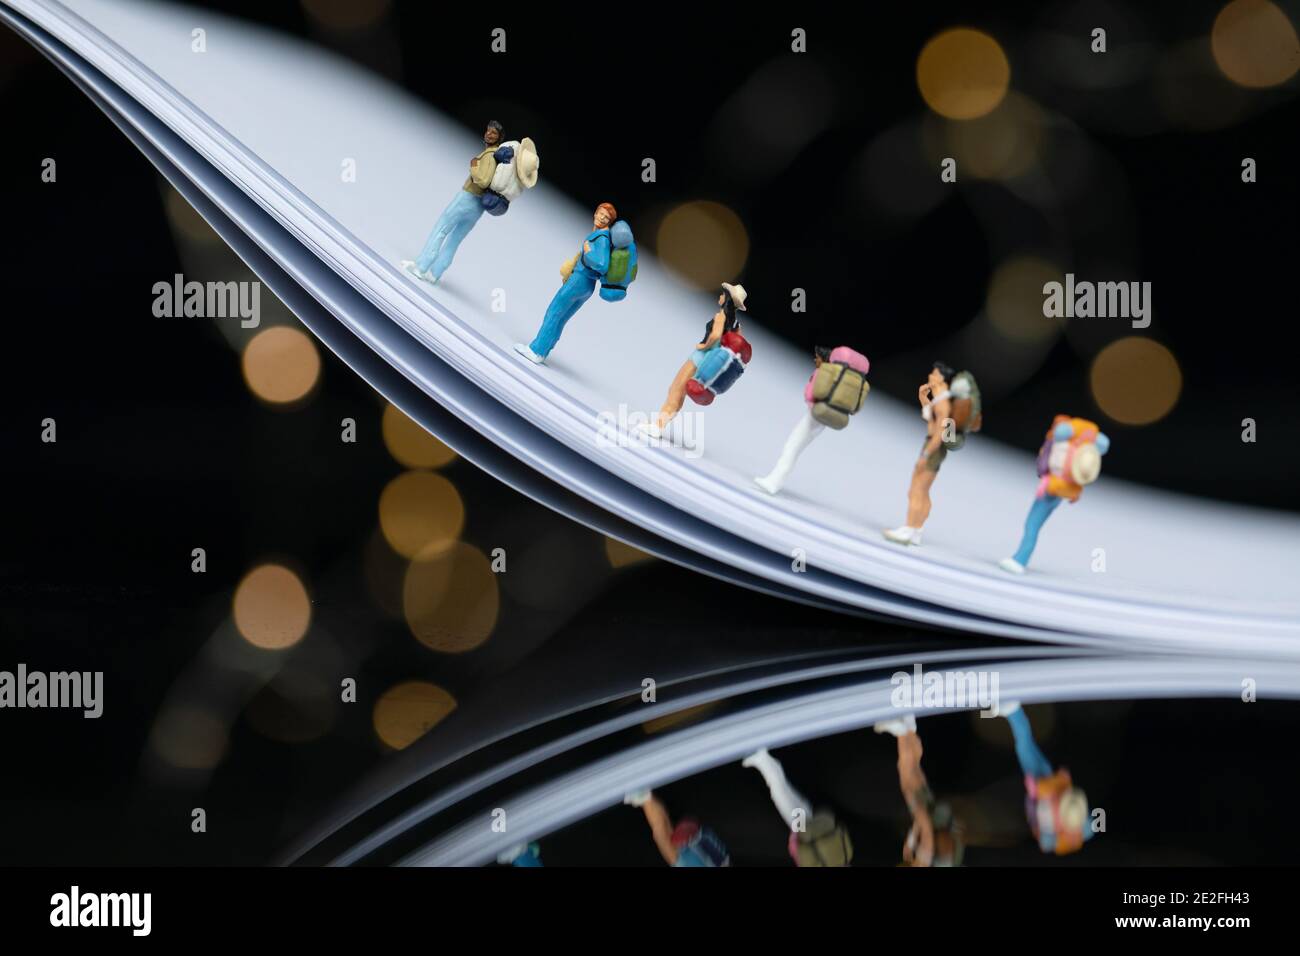 Selektive Fokus Aufnahme von niedlichen Reisenden Figuren auf einer Biegung Metalloberfläche mit Bokeh-Leuchten Stockfoto